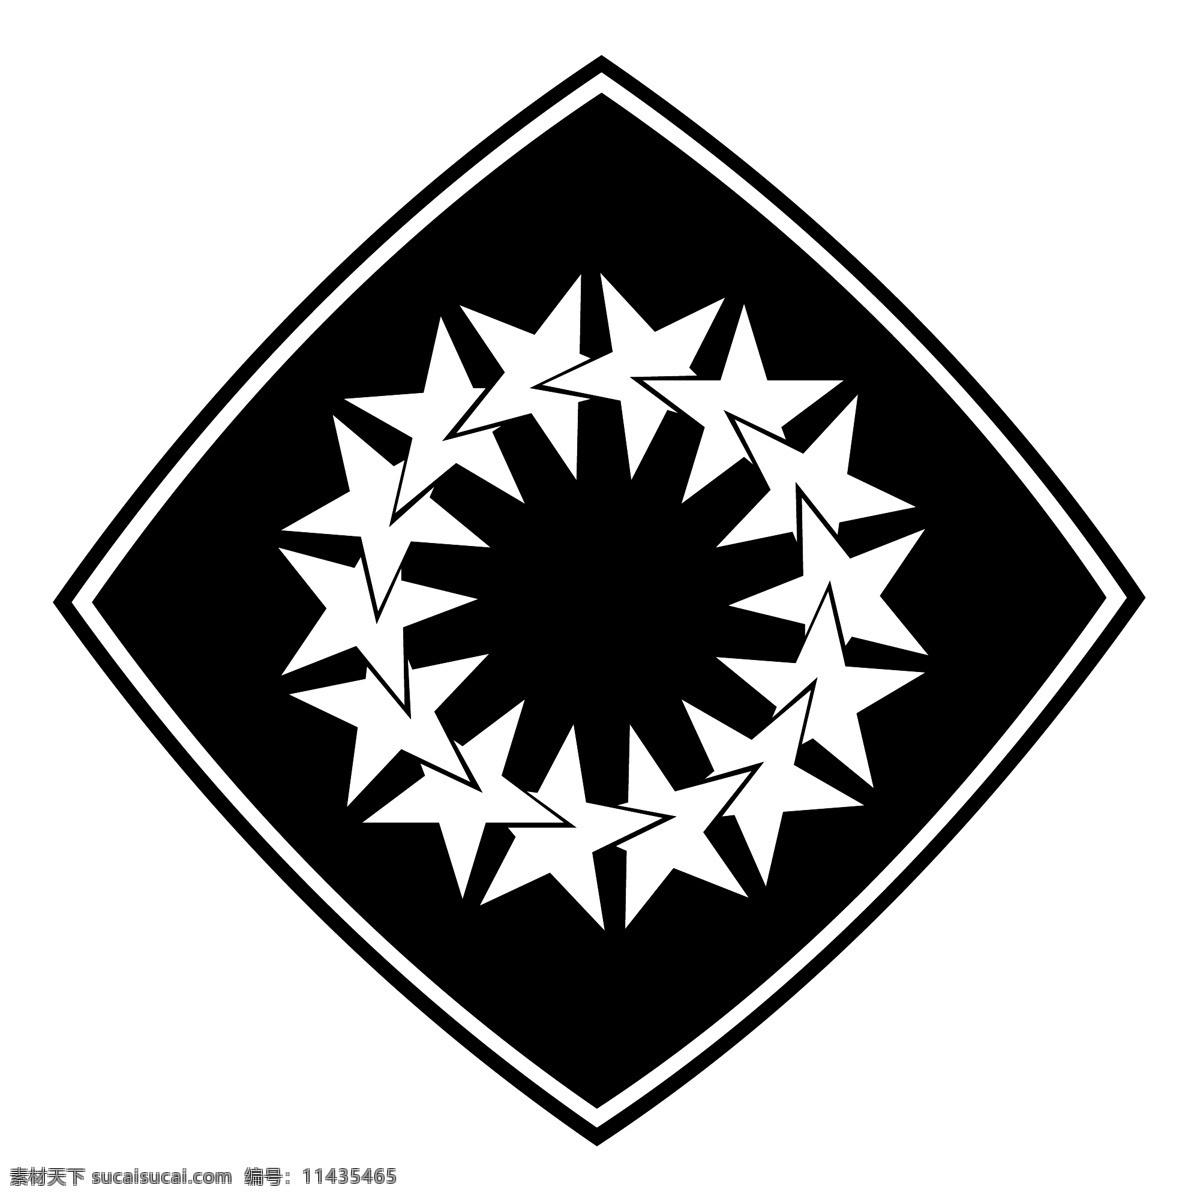 质子3 质子 标志设计 logo 矢量 质子的标识 标识 标志 载体 质子的标志 矢量质子 质子火箭 矢量图 建筑家居